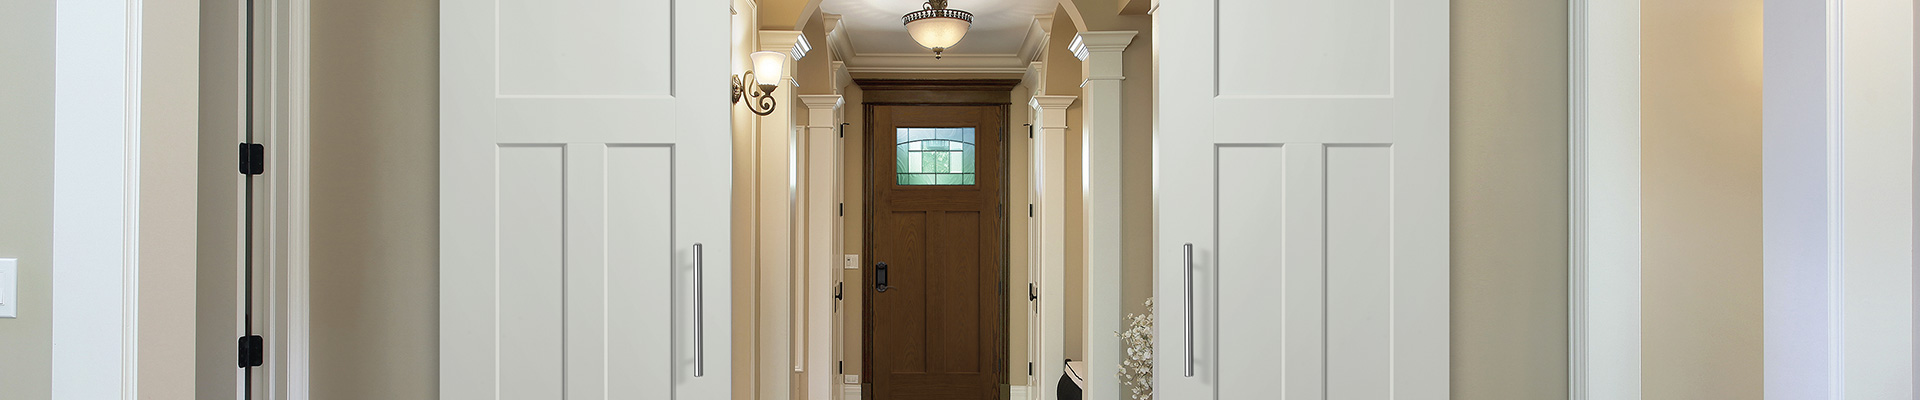 Interior Masonite Door in Showroom